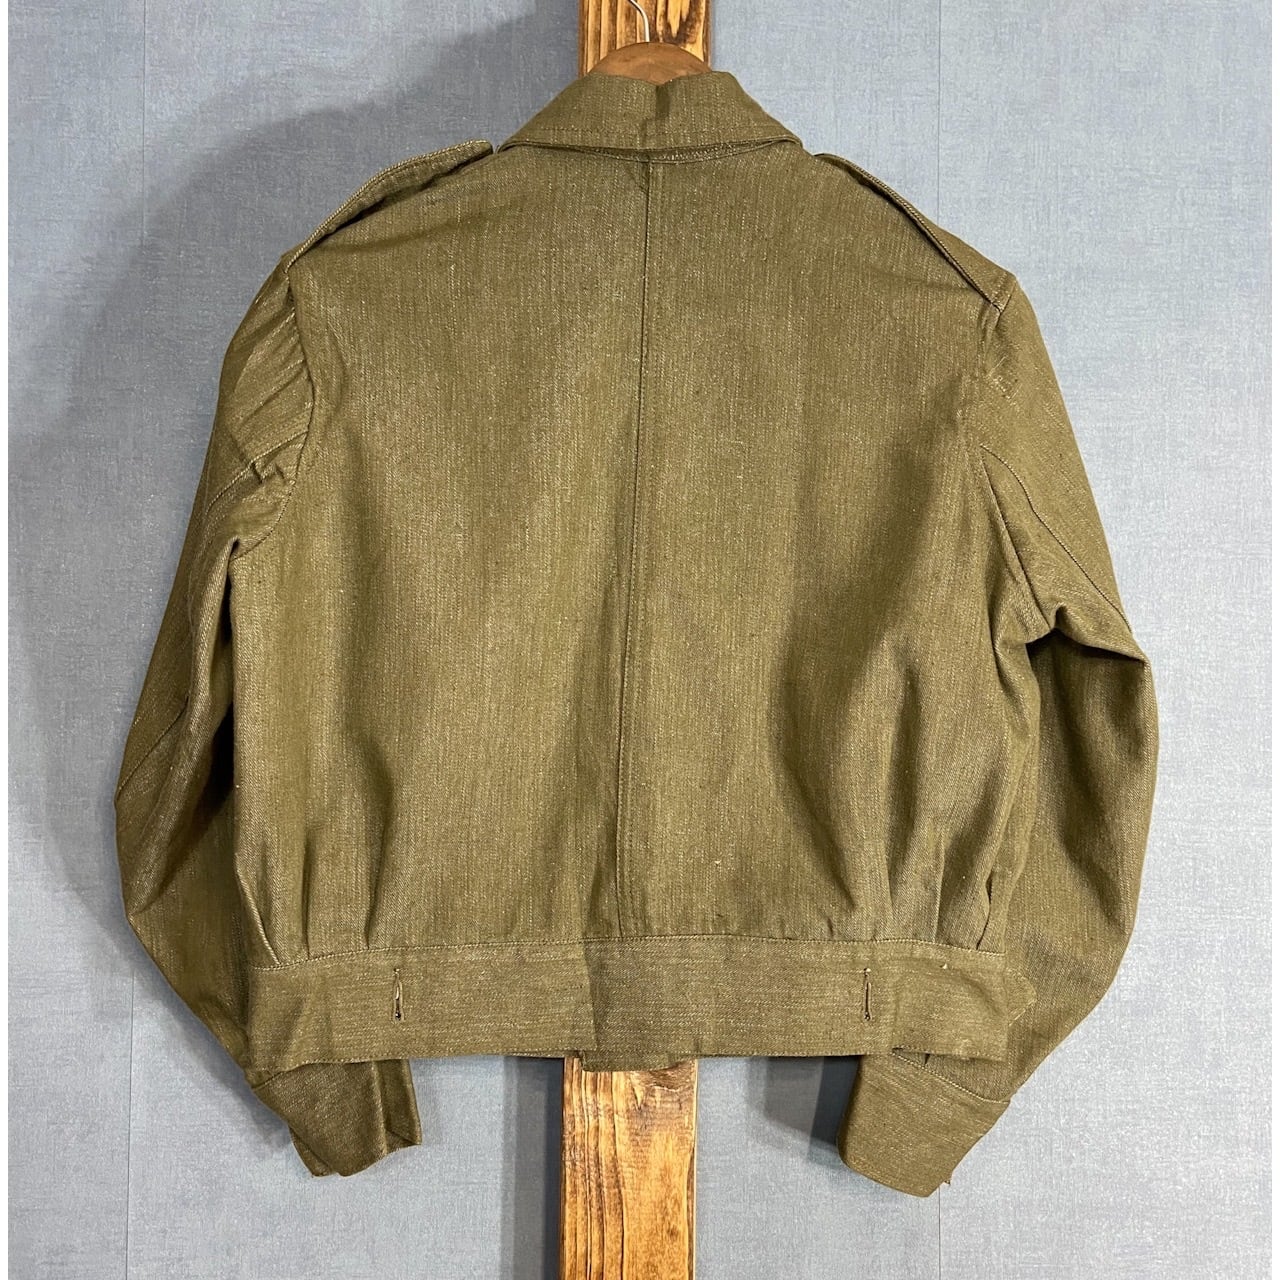 1950s, DS】“British Army” Green Denim Battle Dress Jacket Size 4